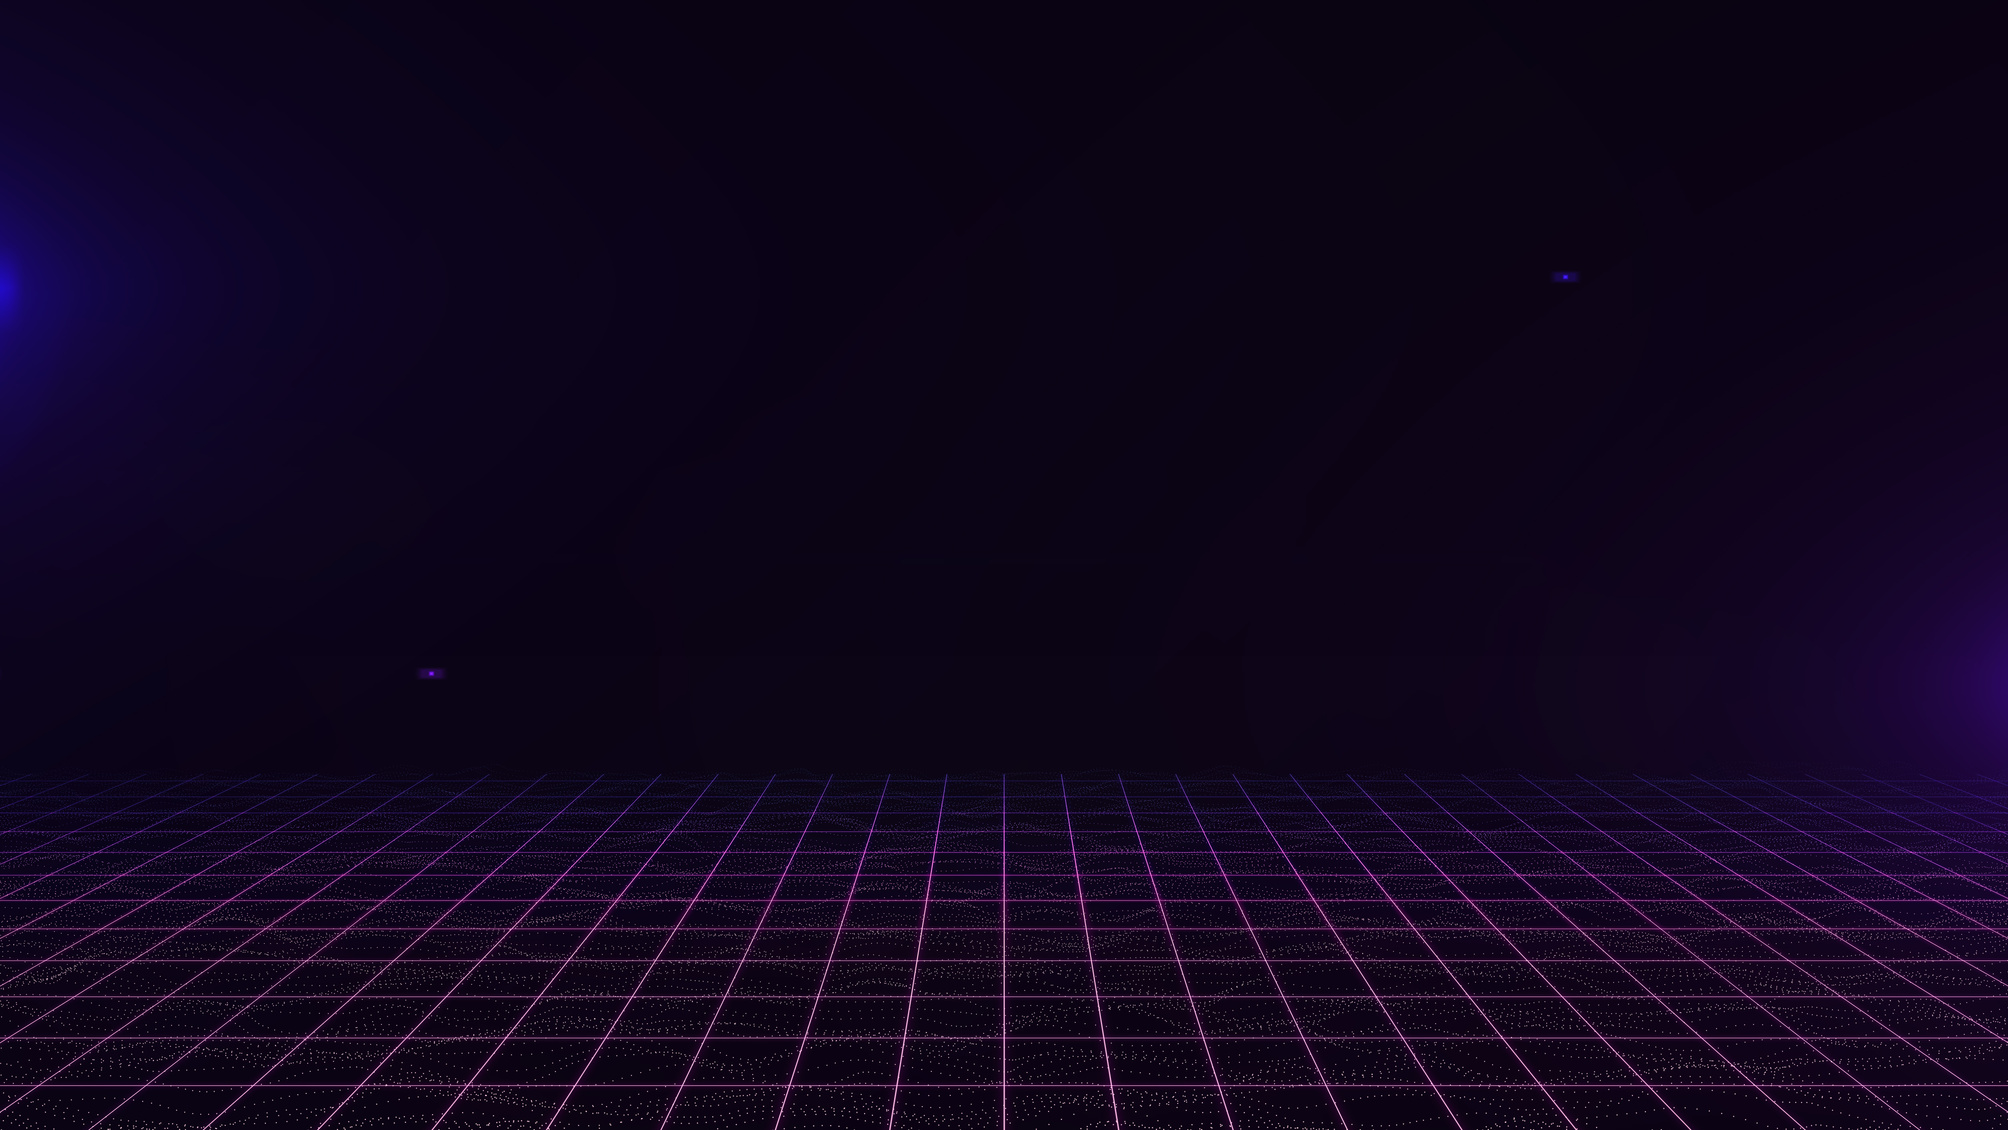 Dark Purple Grid Cyberpunk Background